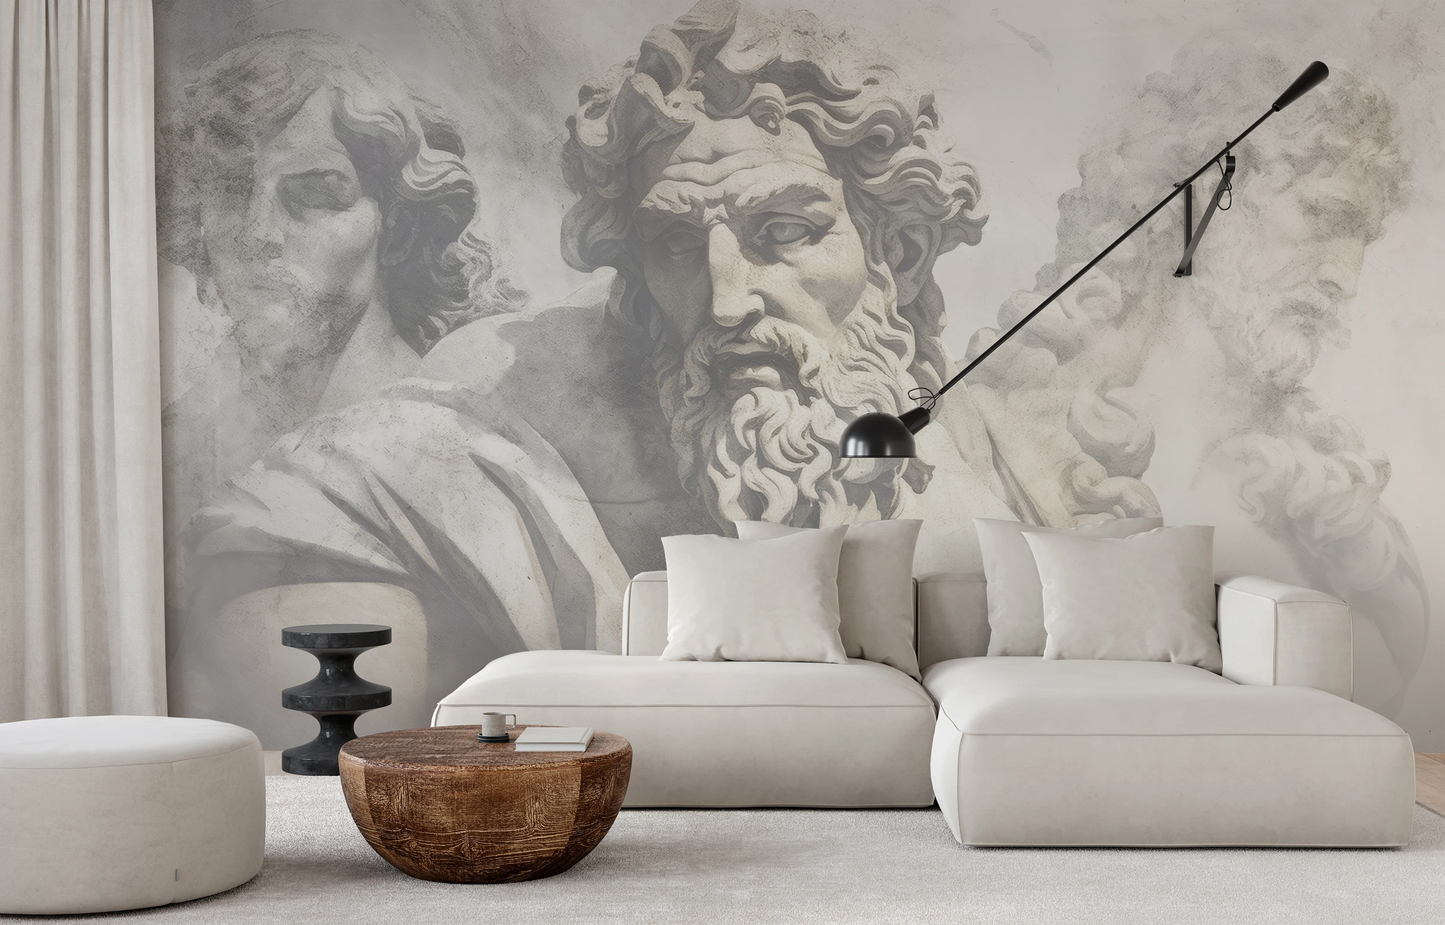 Wzór fototapety artystycznej o nazwie Zeus's Contemplation pokazanej w aranżacji wnętrza.